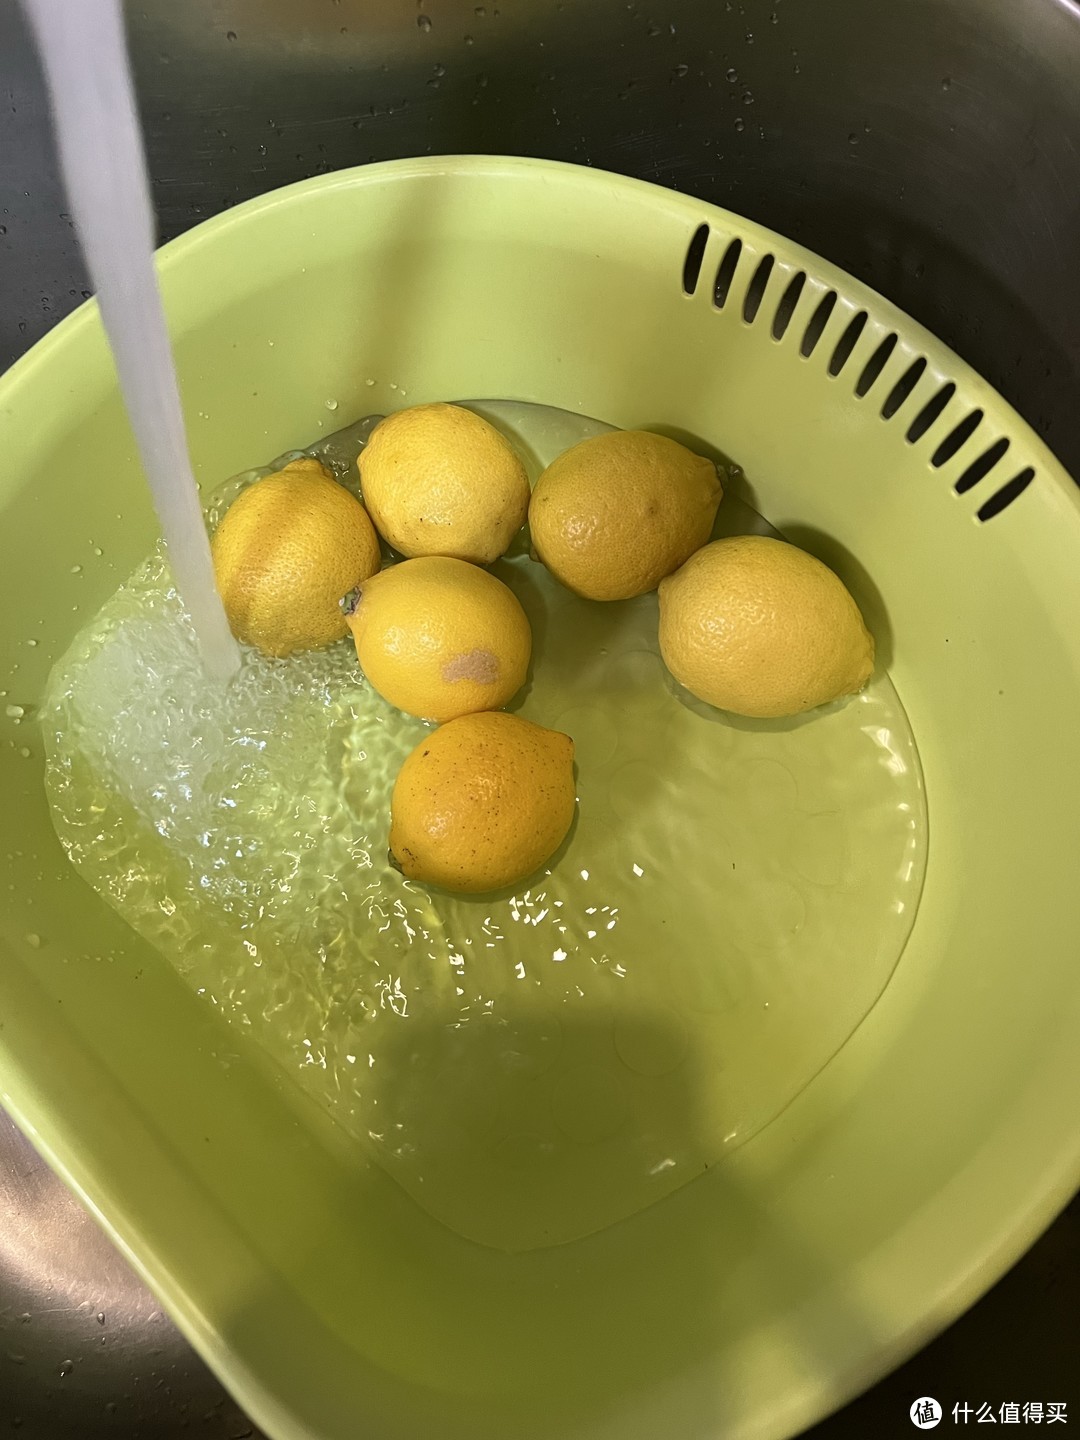 天气暖和了可以在家自制柠檬水喝了，肯定是比白开水好喝的啦